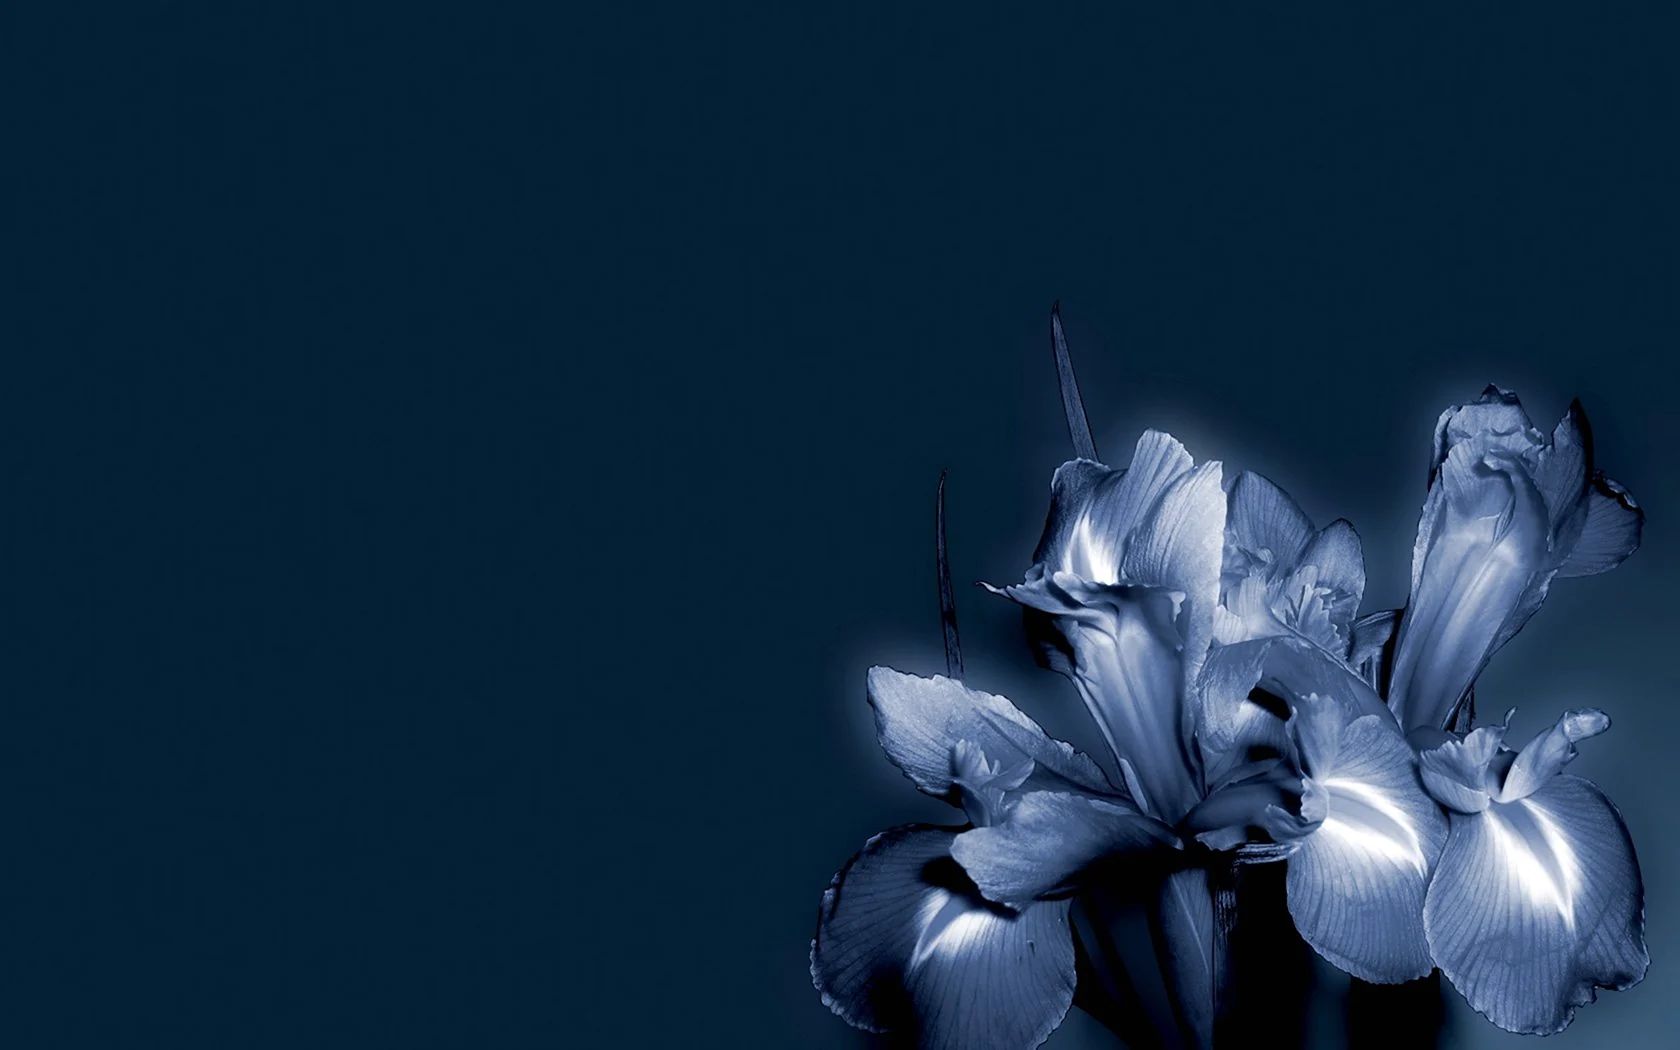 Серо синие цветы